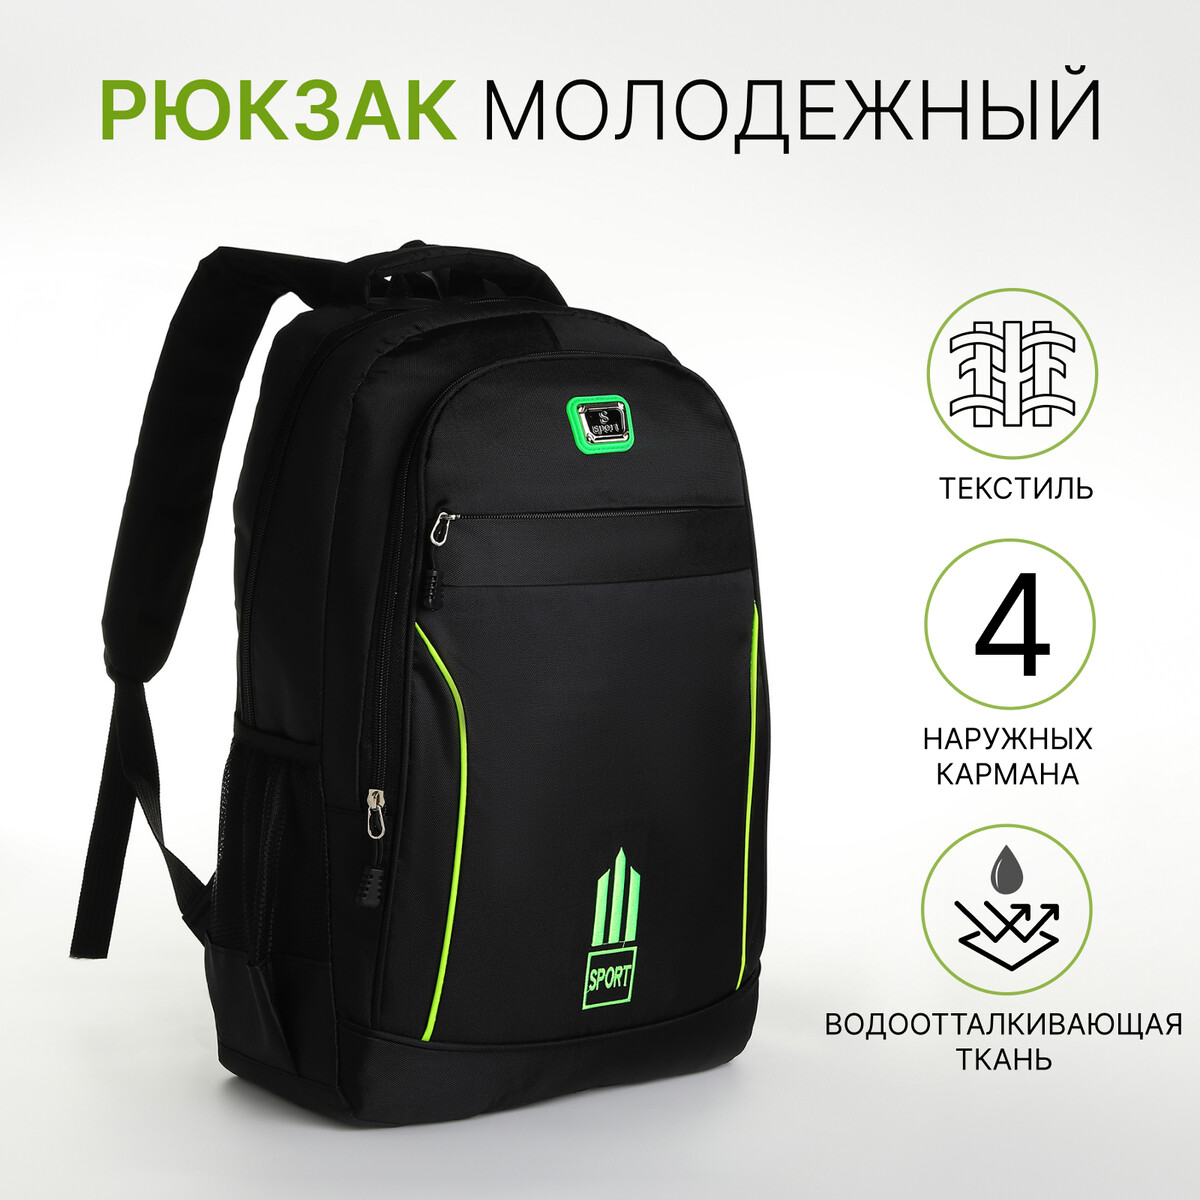 Рюкзак молодежный из текстиля на молнии, 4 кармана, цвет черный/зеленый рюкзак молодежный из текстиля на молнии 4 кармана зеленый